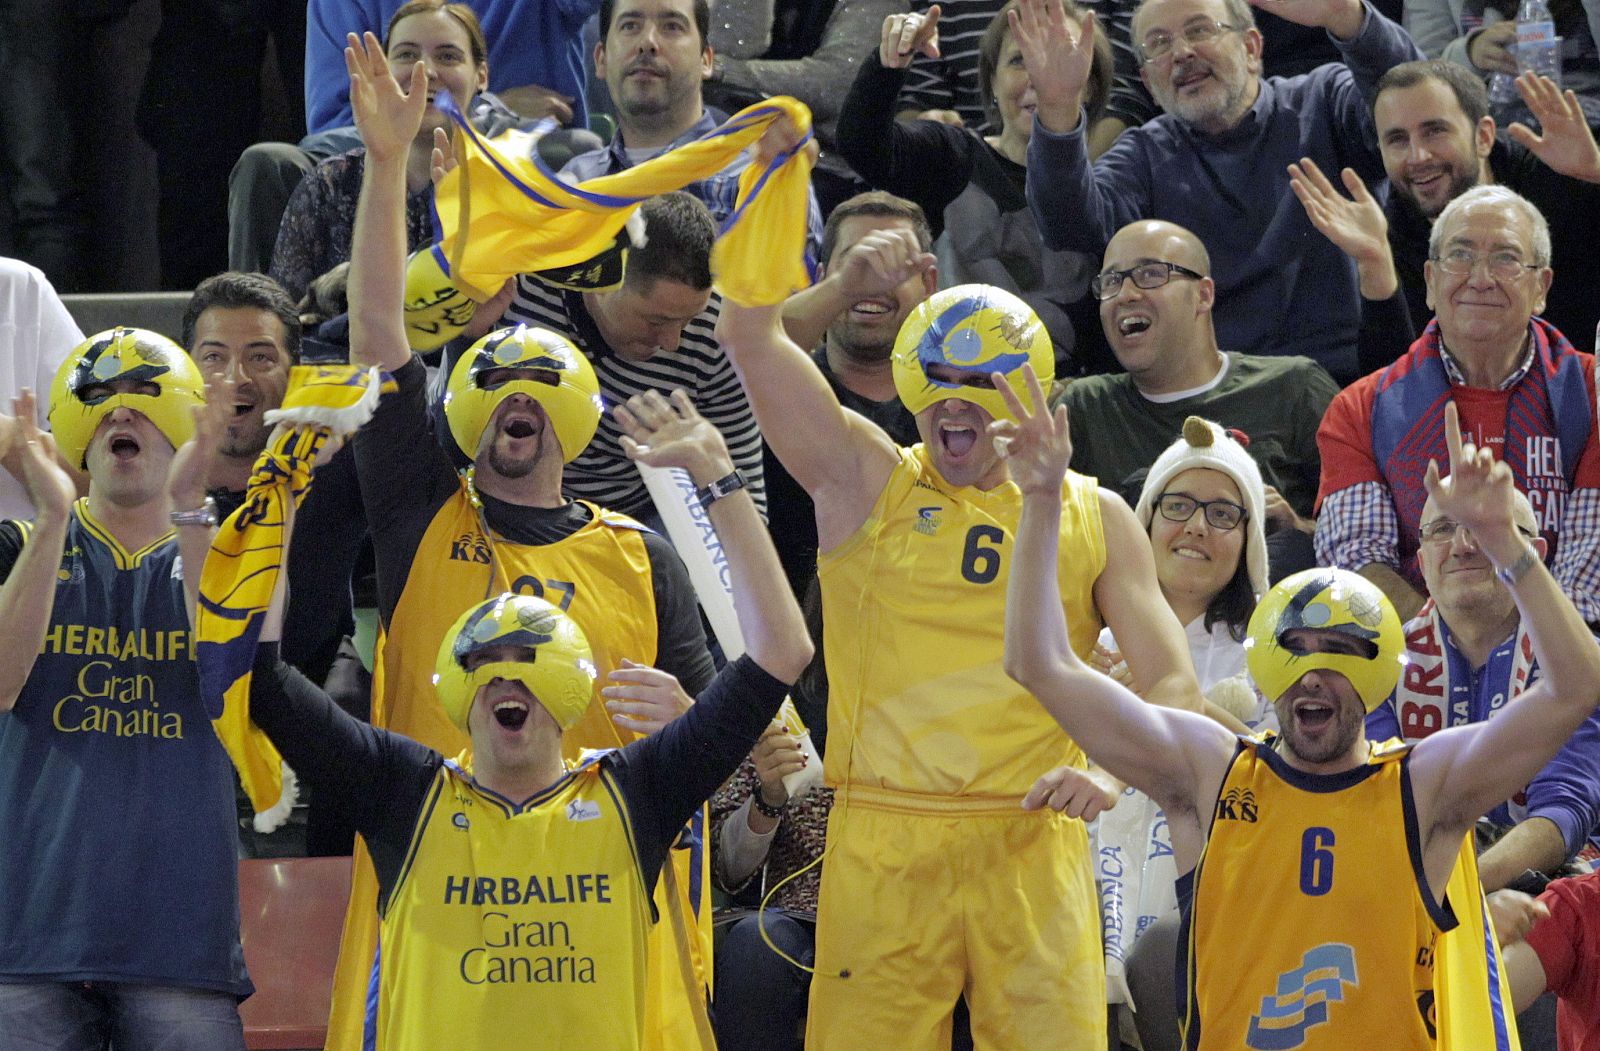 La afición del Herbalife Gran Canaria celebra la victoria de u equipo frente al Valencia Basket.